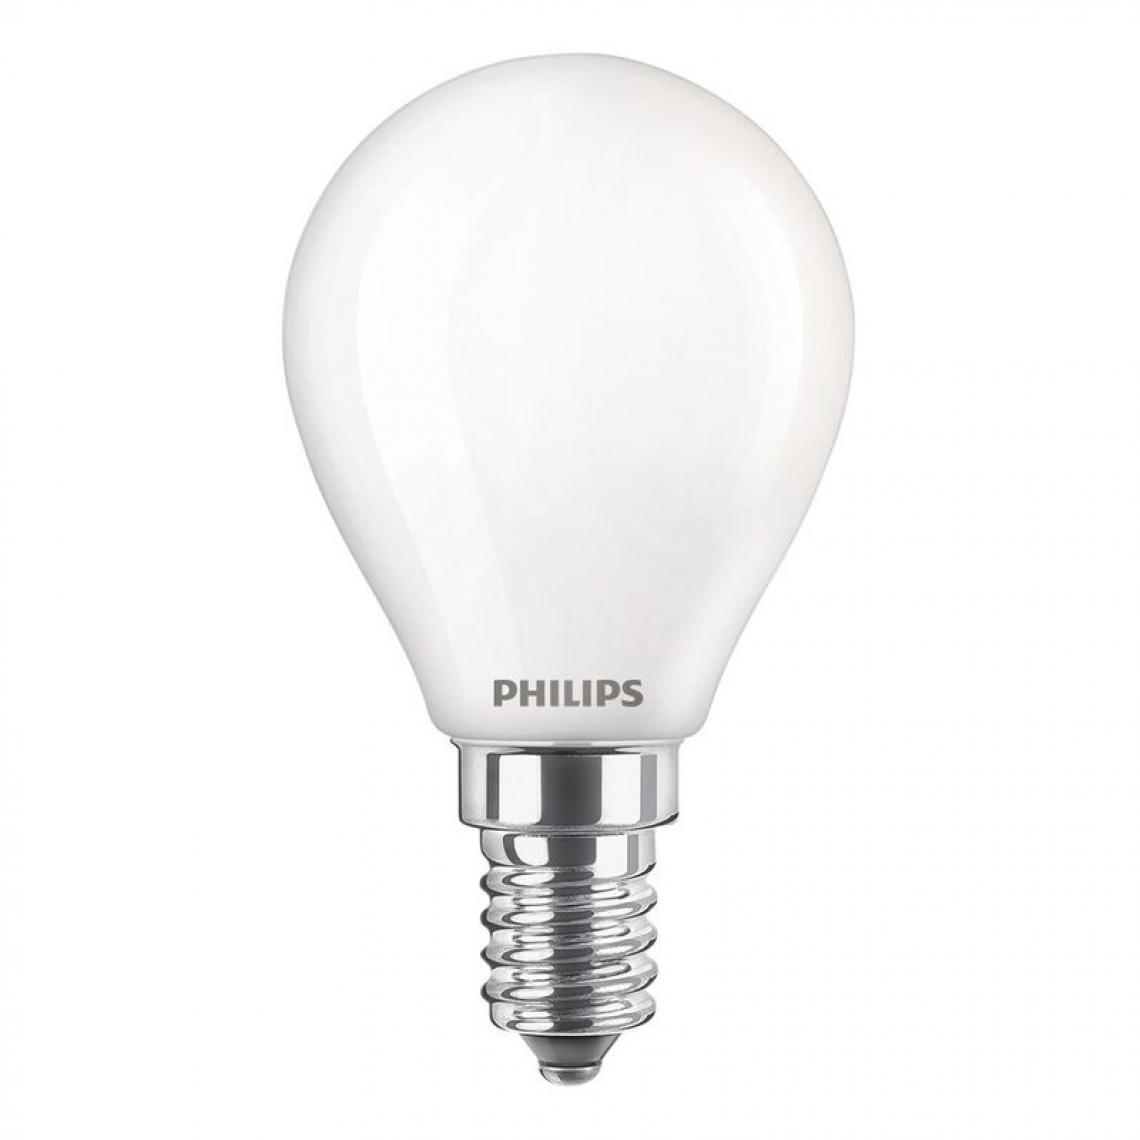 Philips - Ampoule LED sphérique E14 PHILIPS EQ40W blanc froid - Ampoules LED